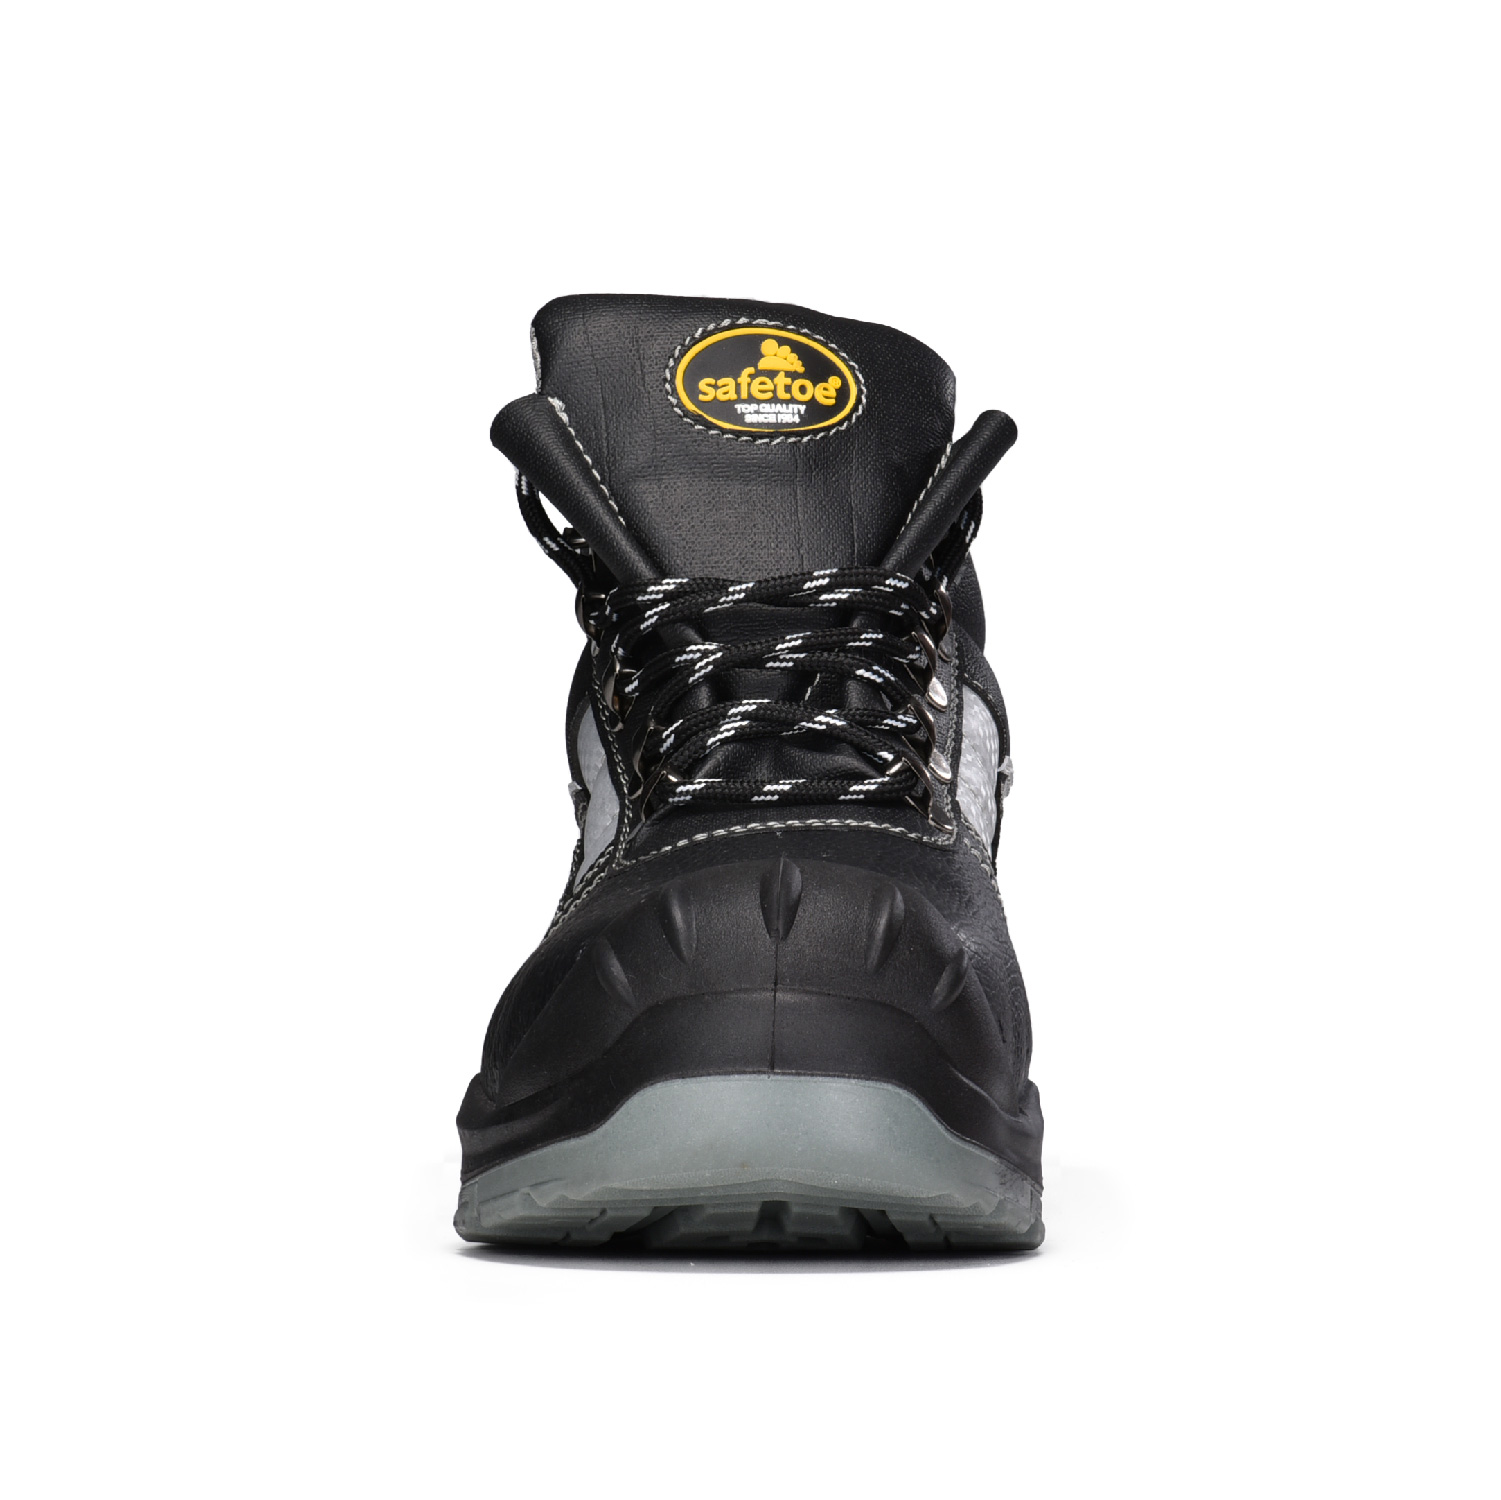 Защитные ботинки S3 для тяжелых условий эксплуатации с большим носком Overcap Design M-8027 Overcap